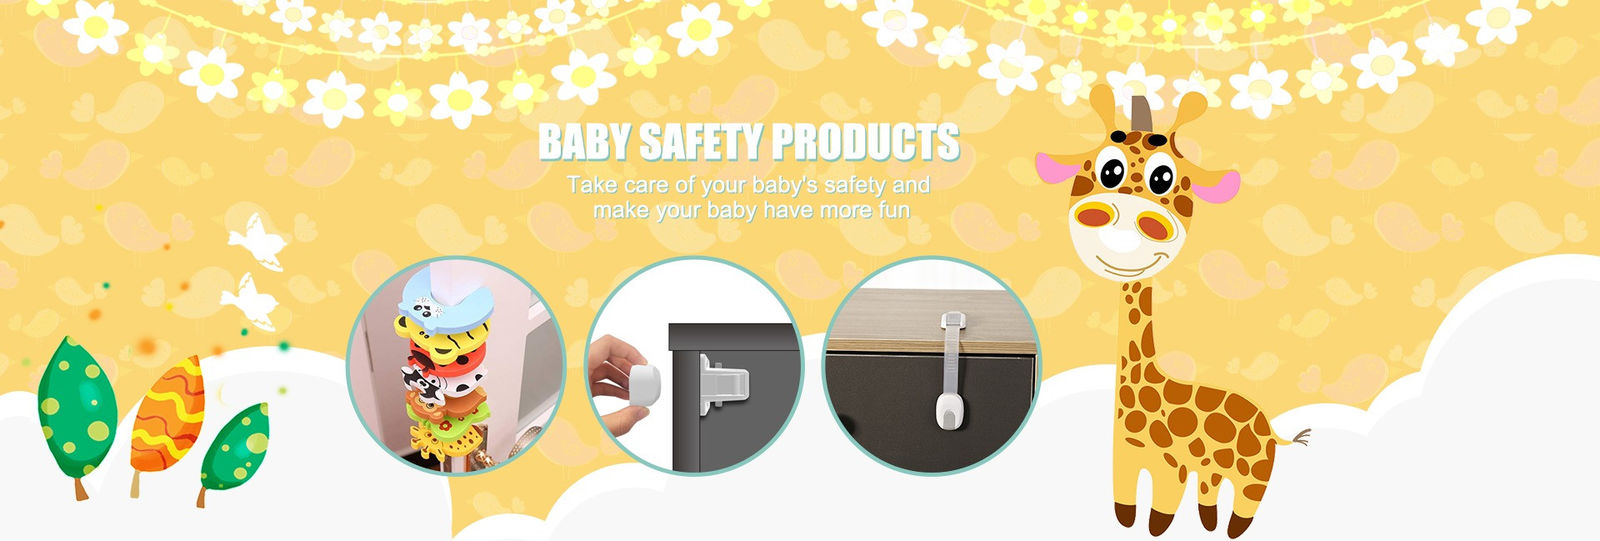 赤ん坊の安全ベビーサークル